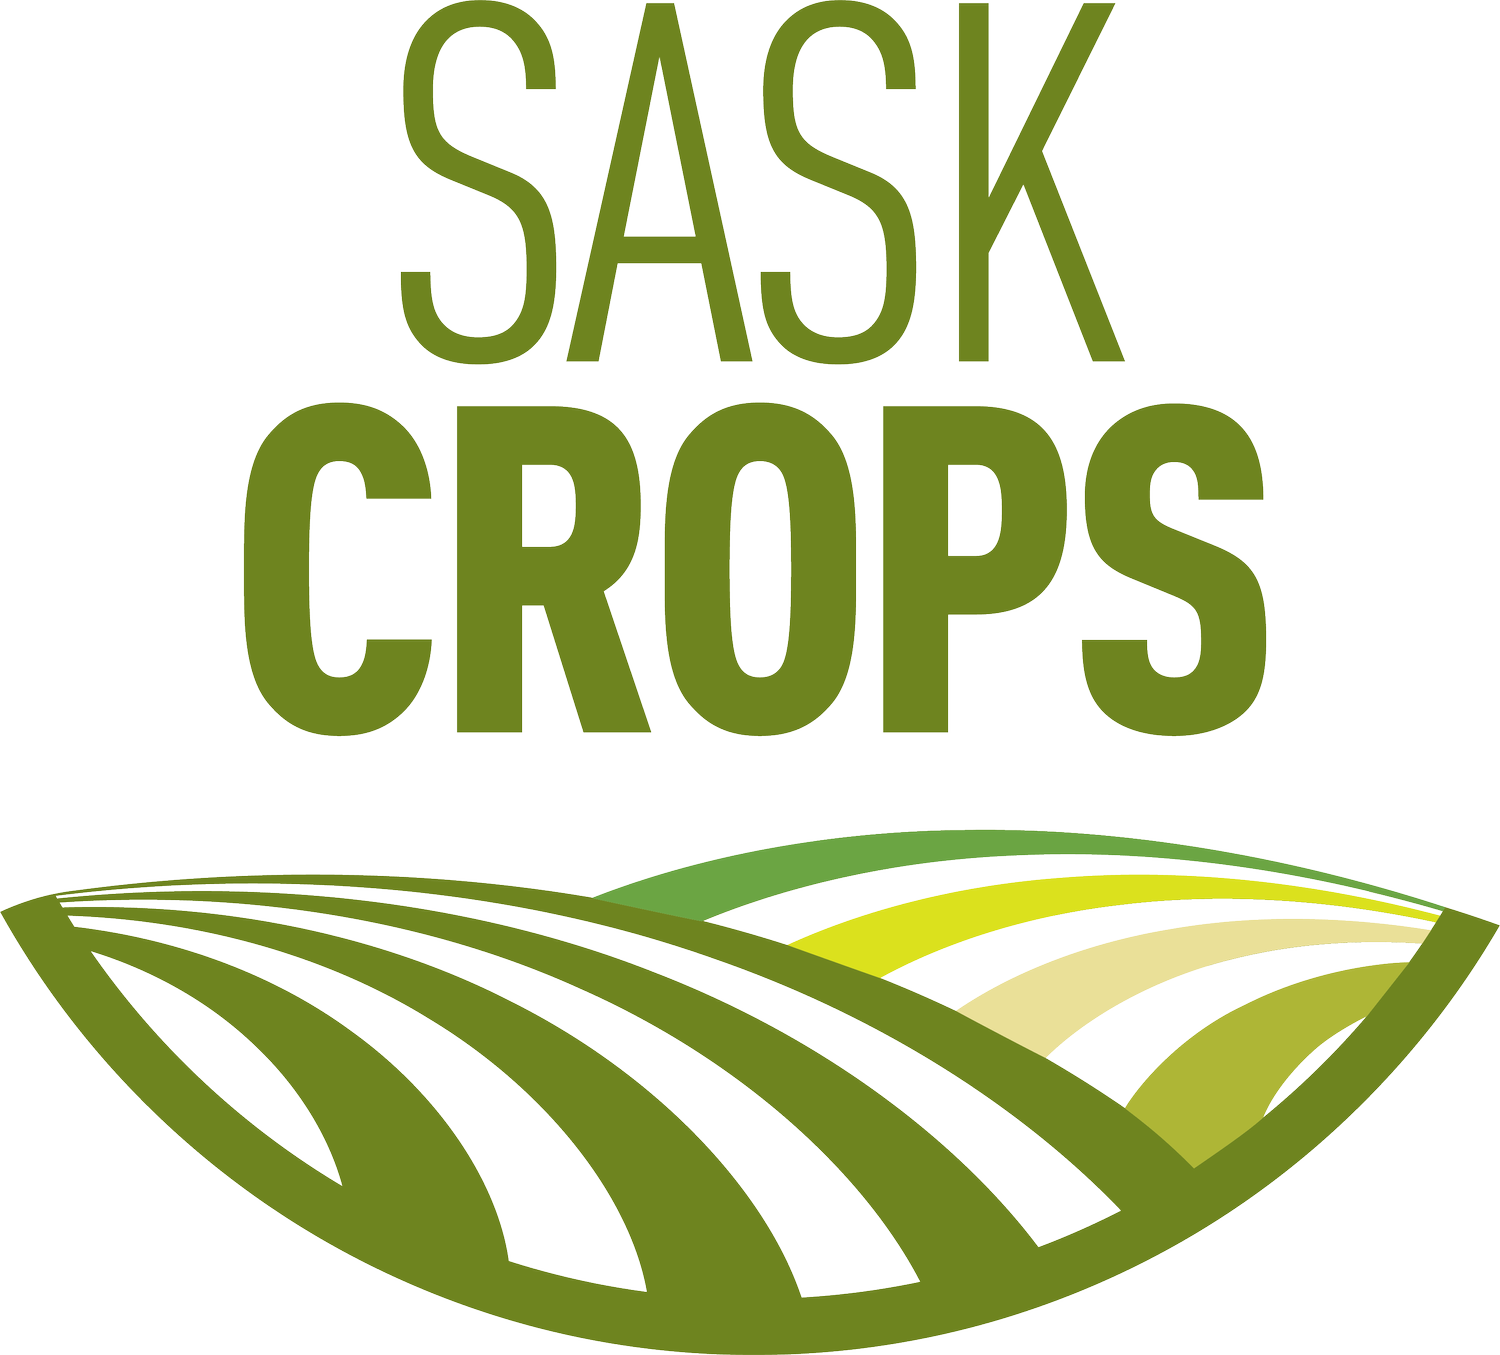 Saskatchewan Crop Organizations